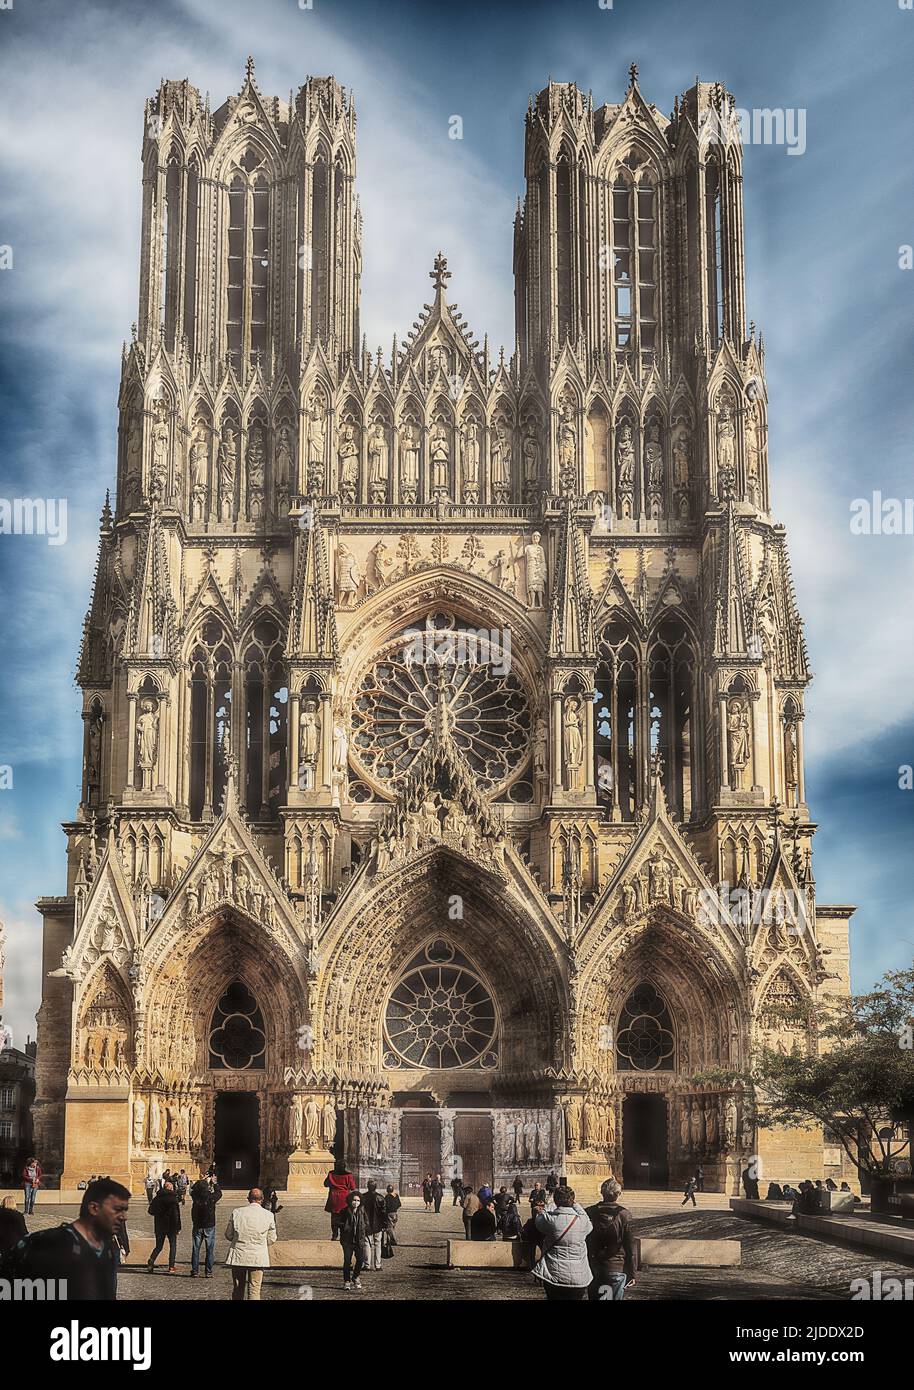 REIMS, FRANCIA - 15 OTTOBRE 2021: L'imponente cattedrale gotica di Reims è un punto di riferimento storico come re di Francia vi sono stati incoronati. Foto Stock